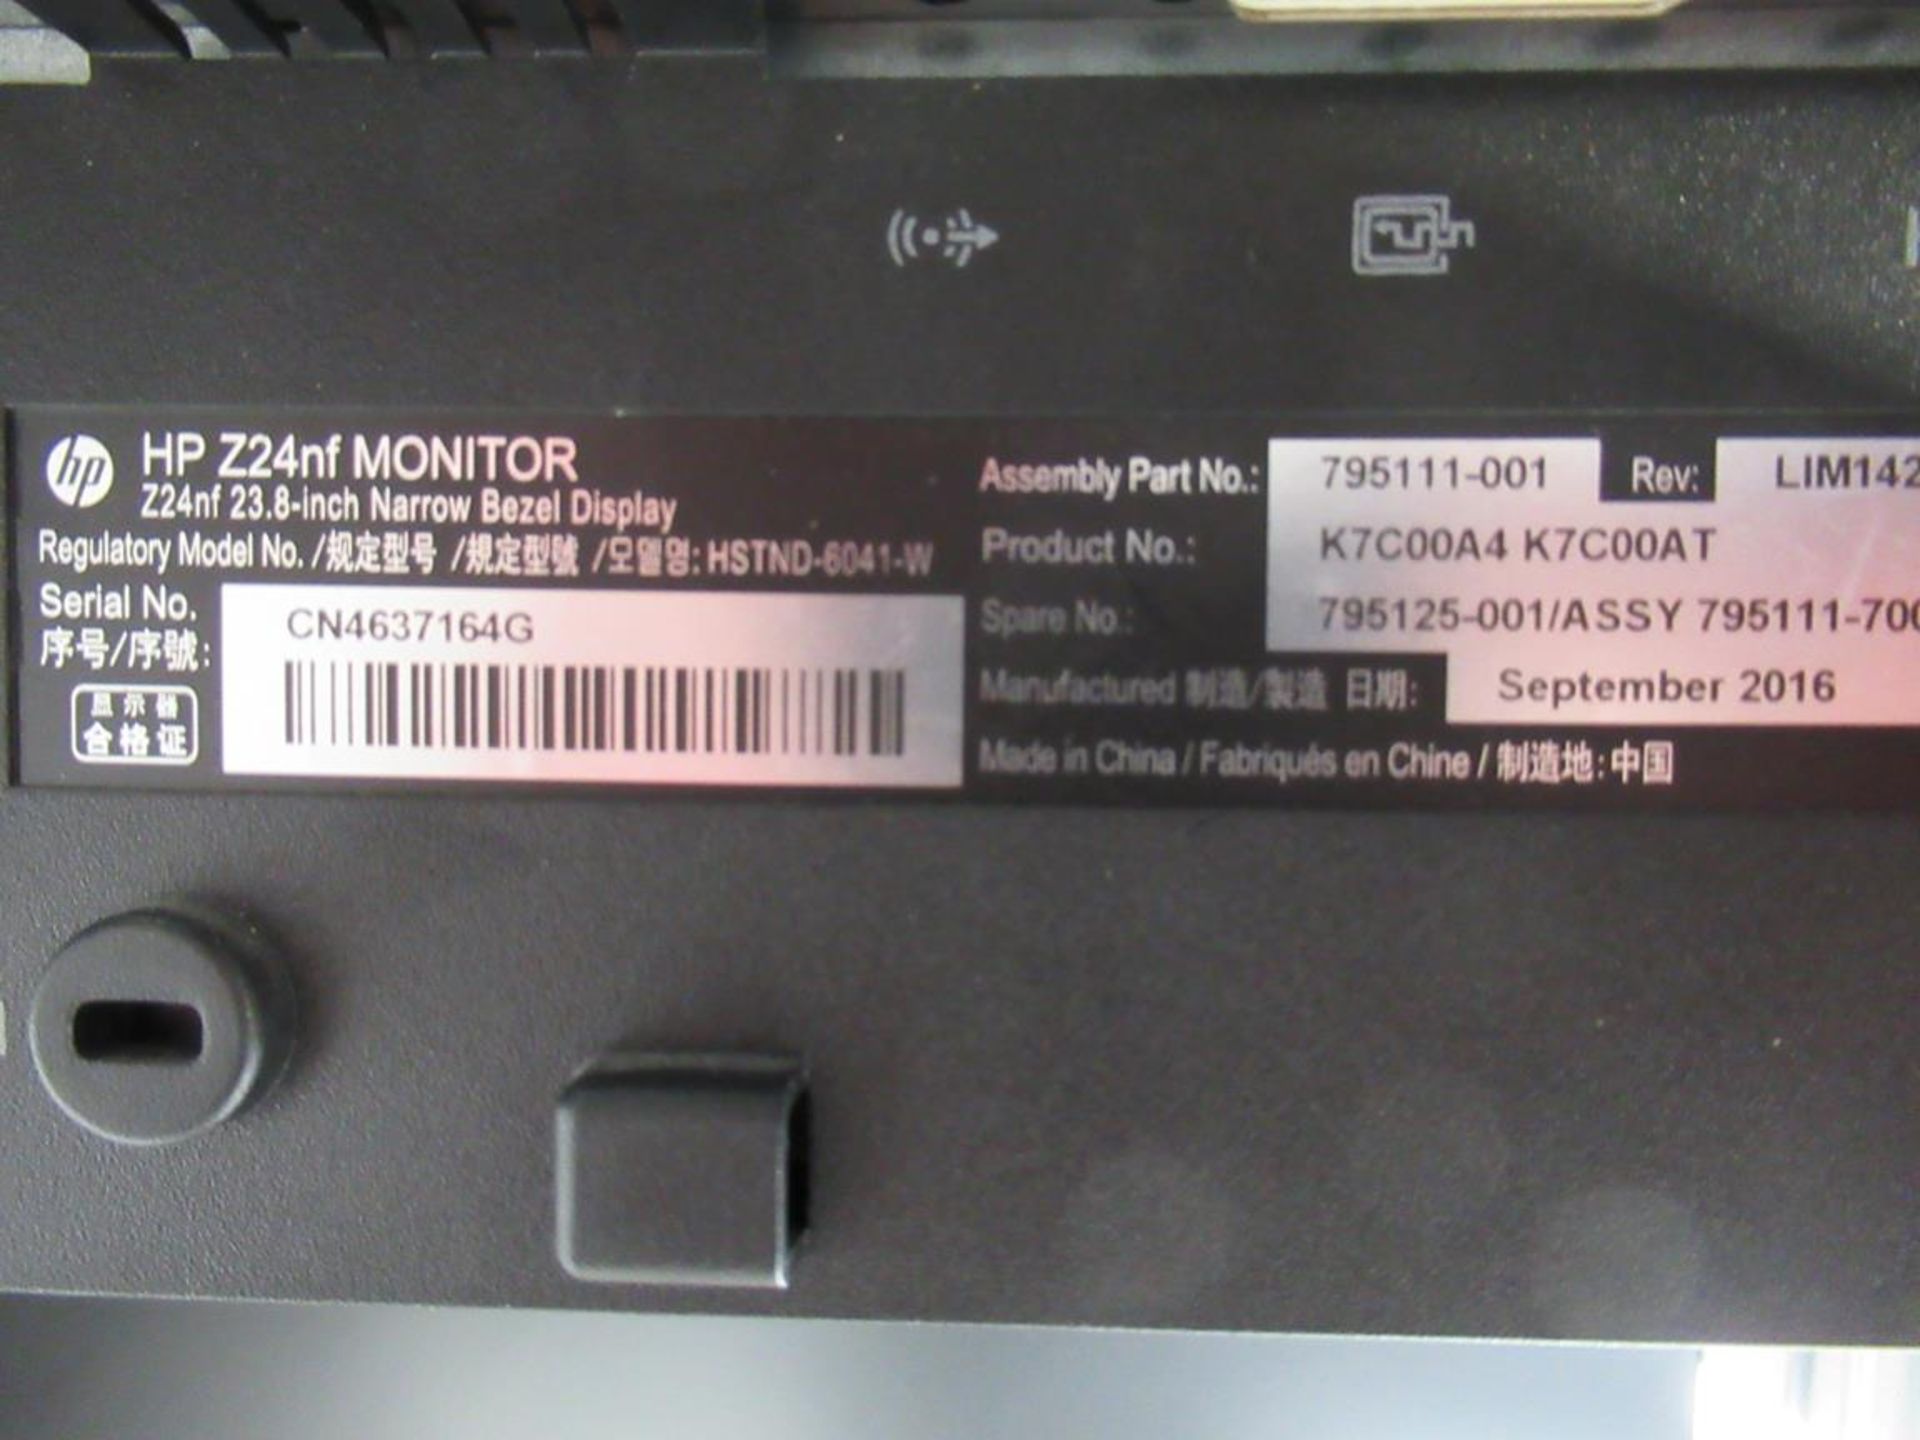 8x (no.) HP, Z24nf 23.8 monitors - Image 3 of 5